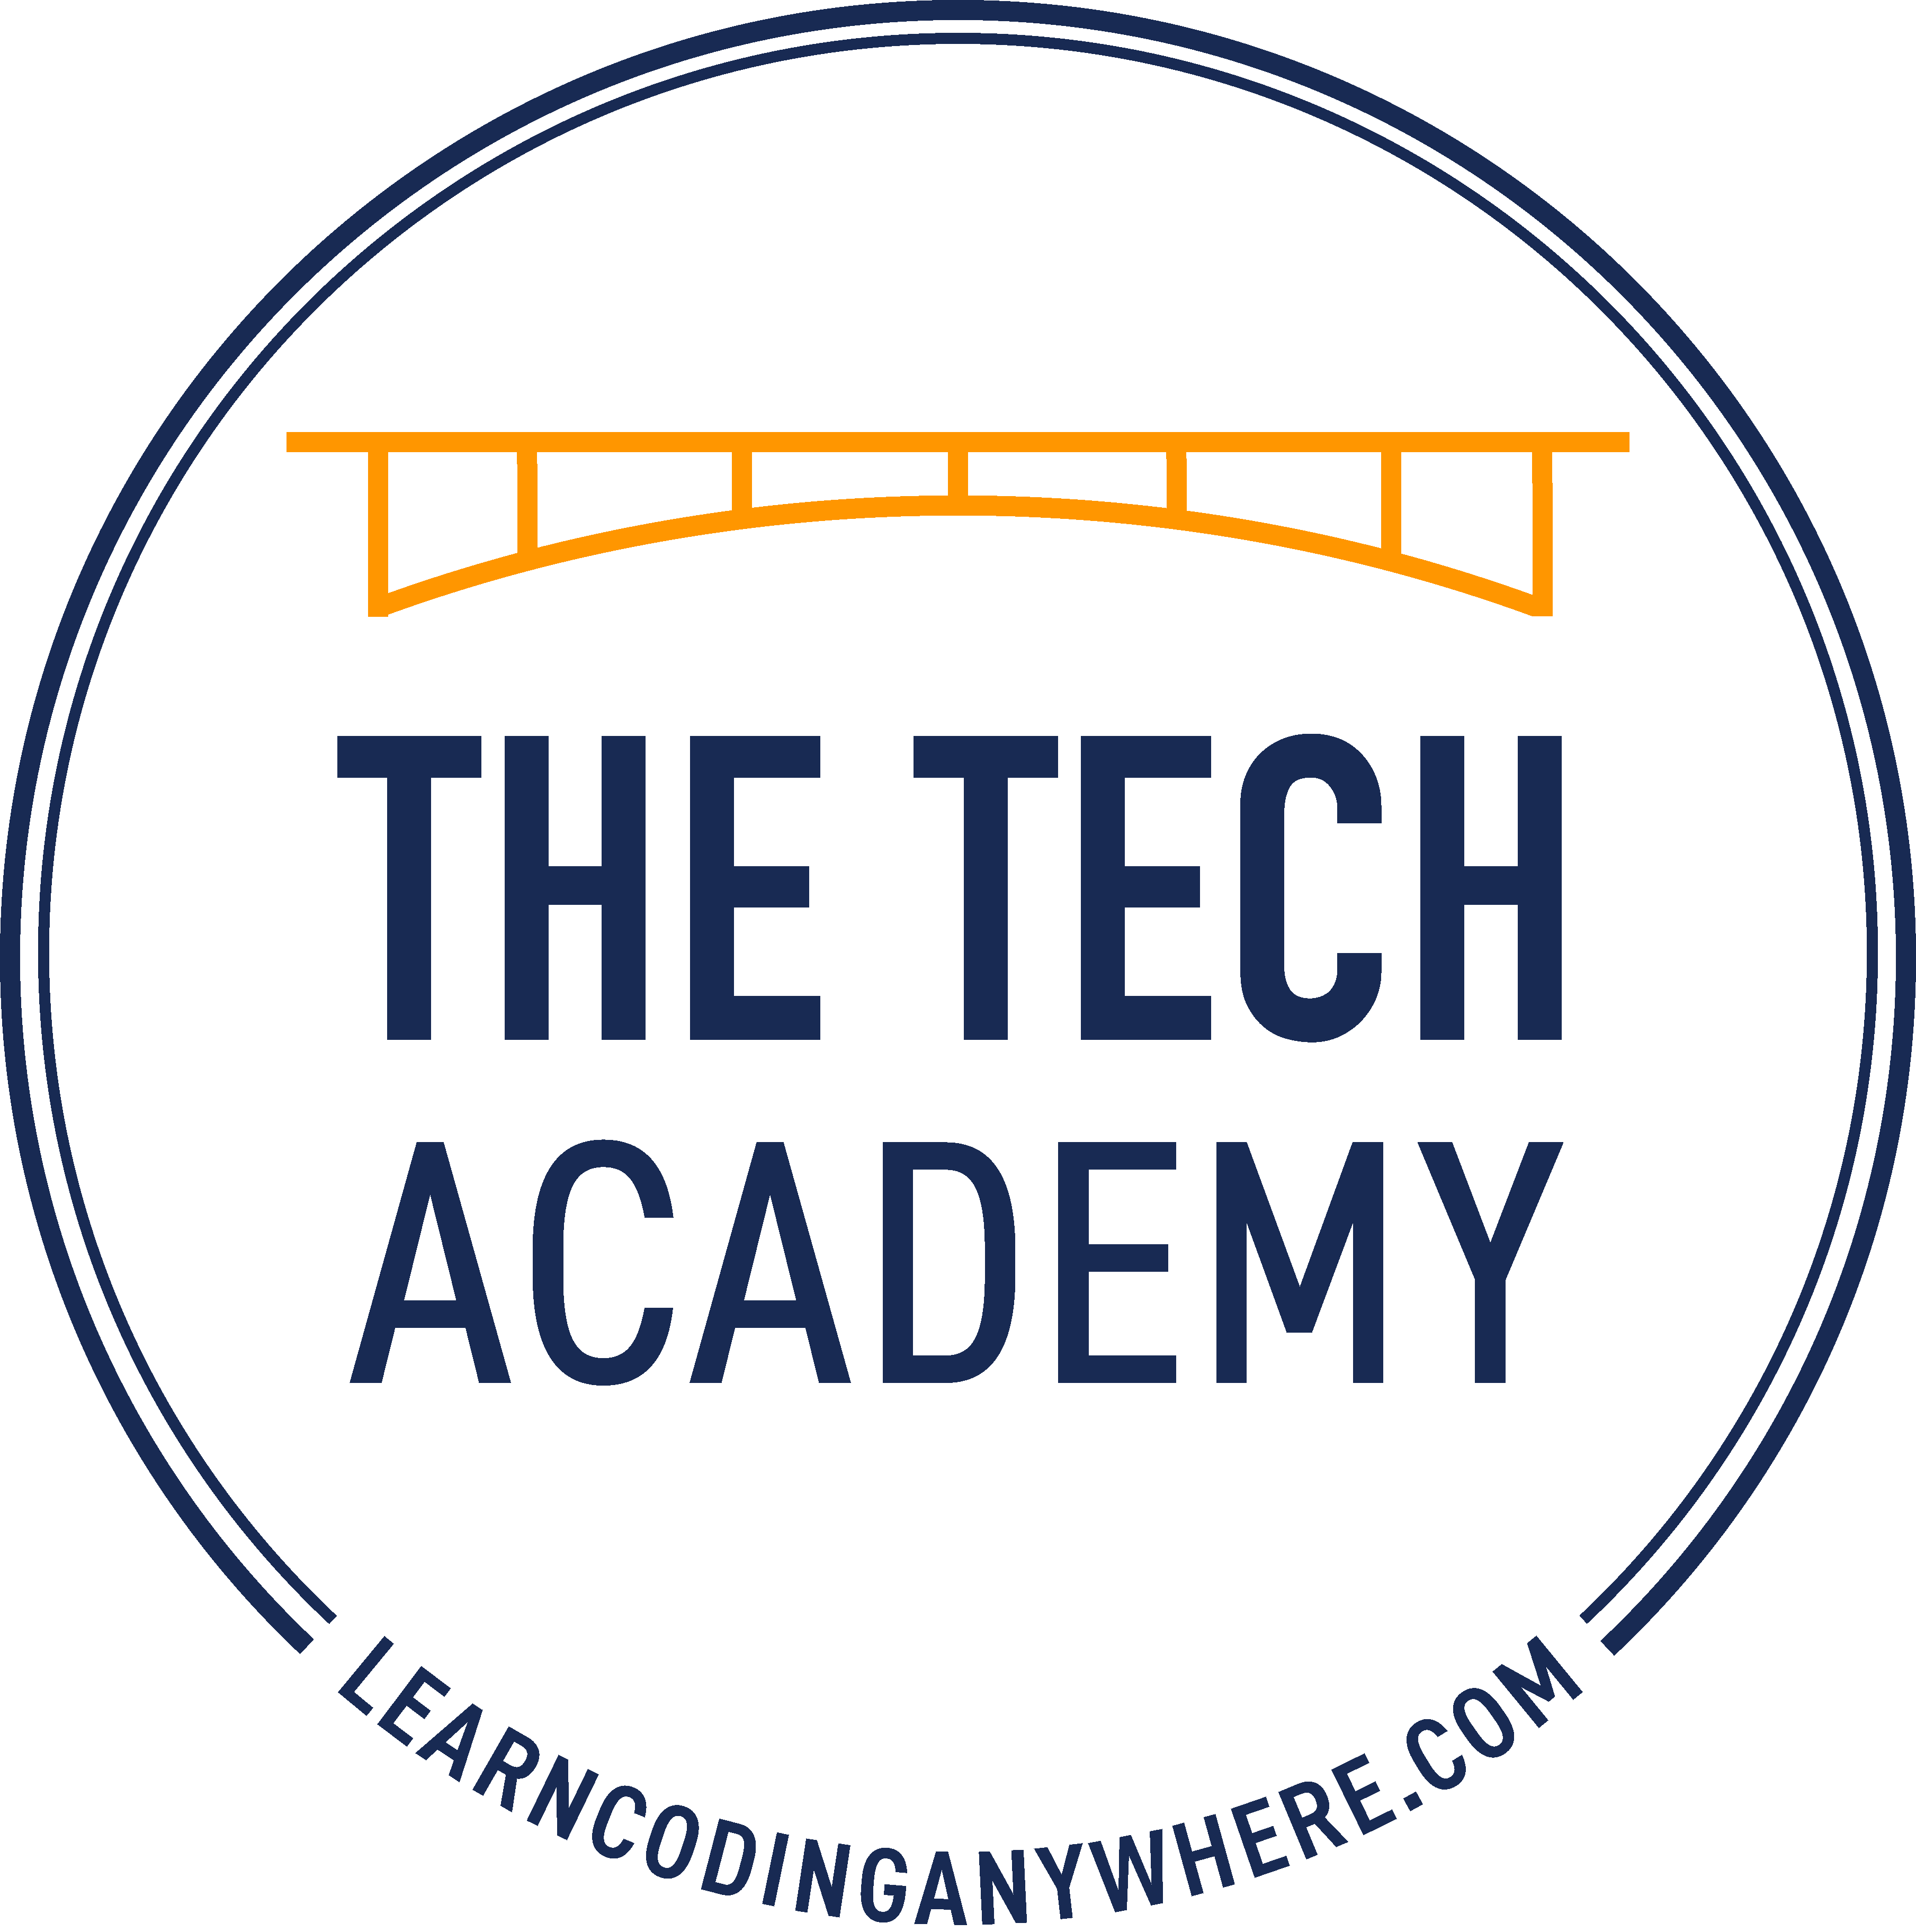 The Tech Academy circular logo